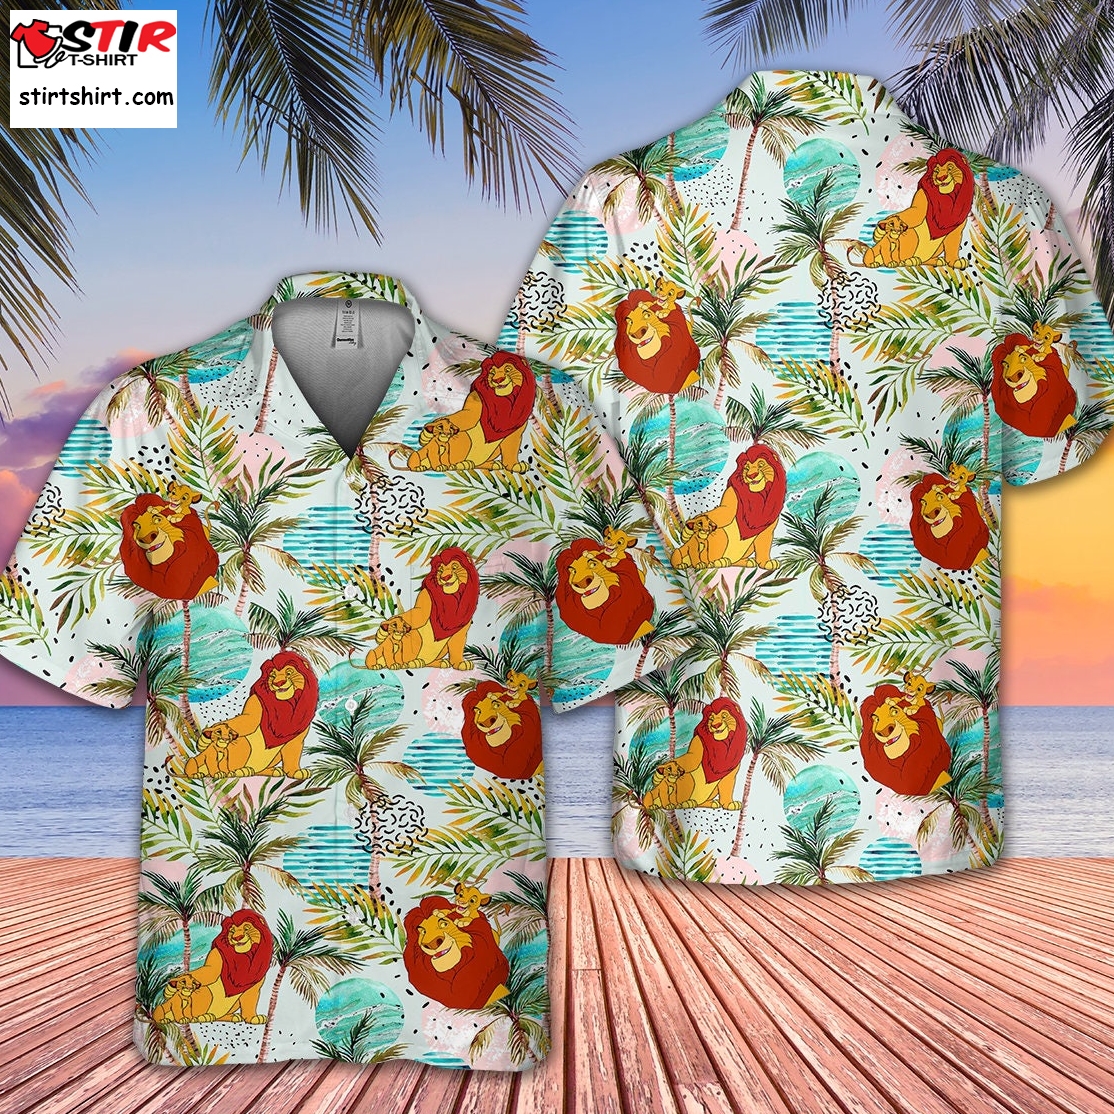 Lion King Family Hawaii Aloha Shirt  80s  Outfit